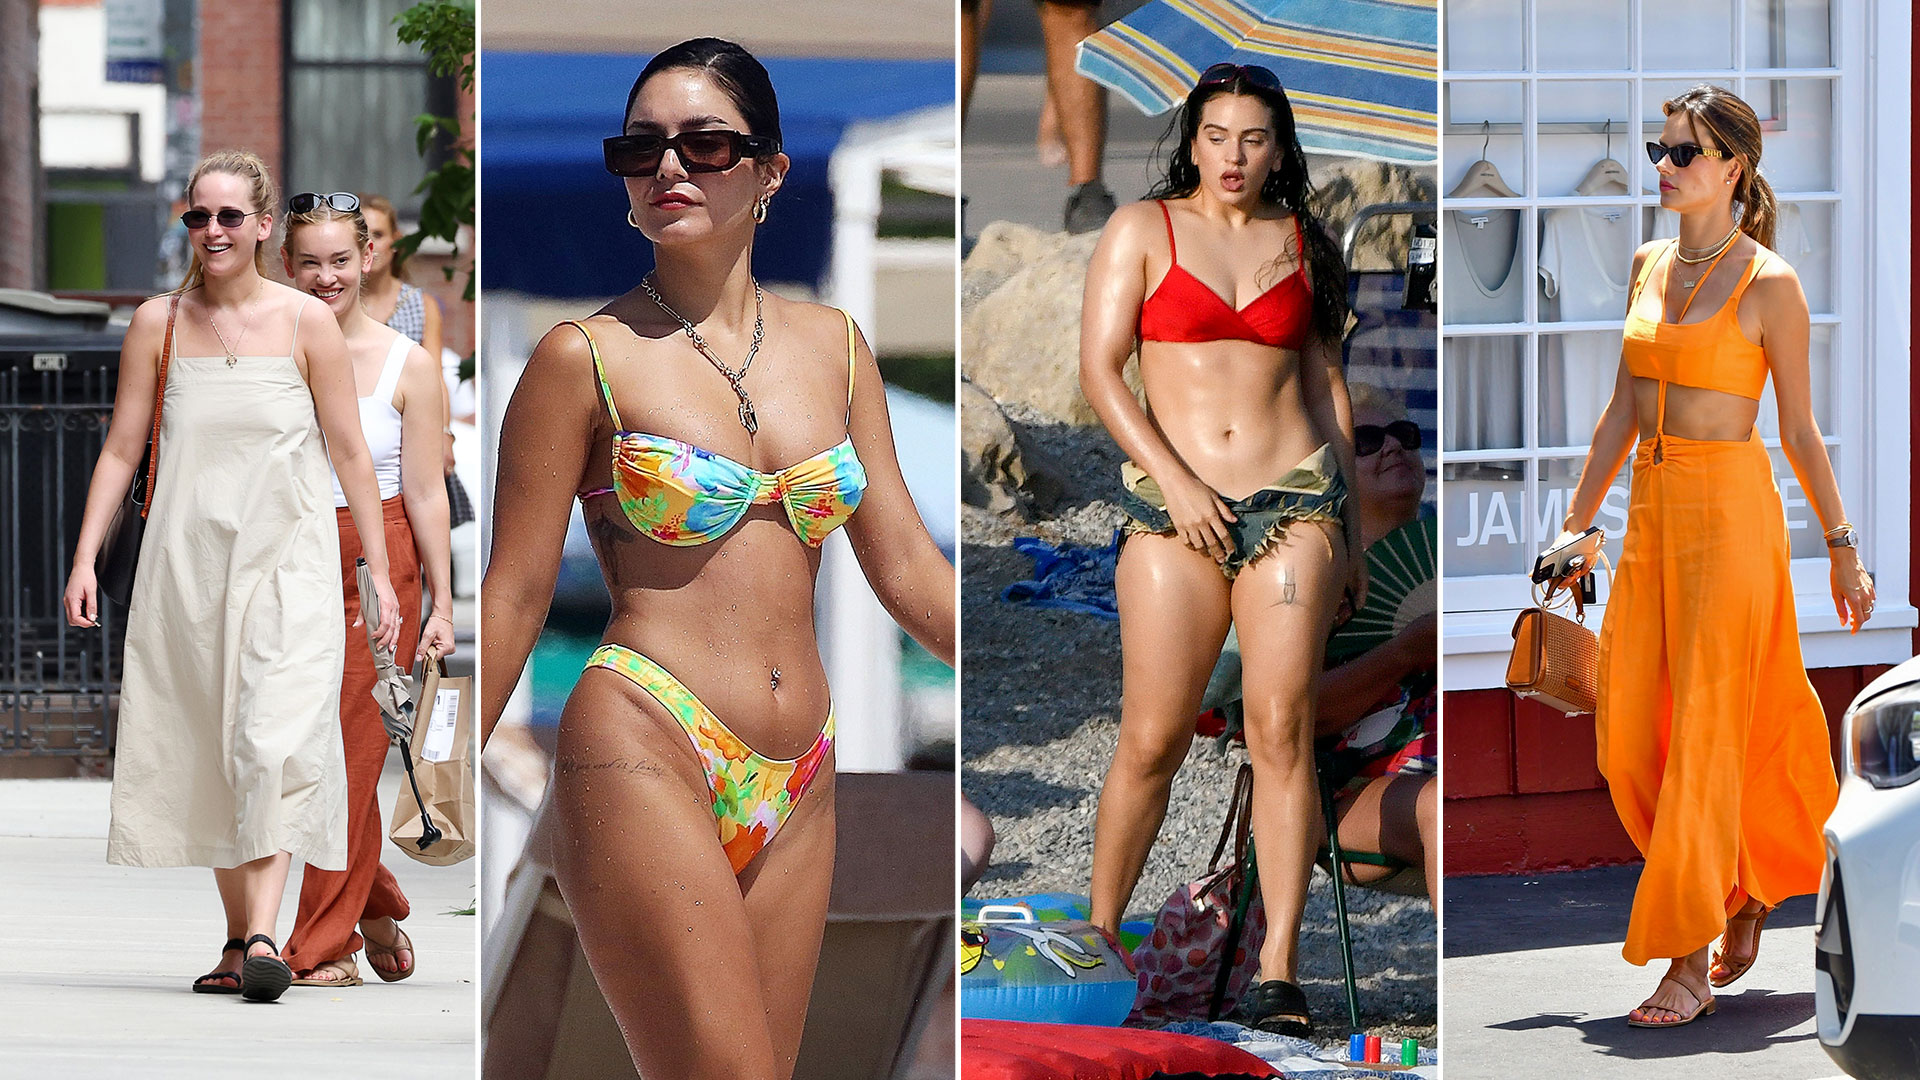 Del blooper de Jennifer Lawrence al día de playa de Vanessa Hudgens: celebrities en un click